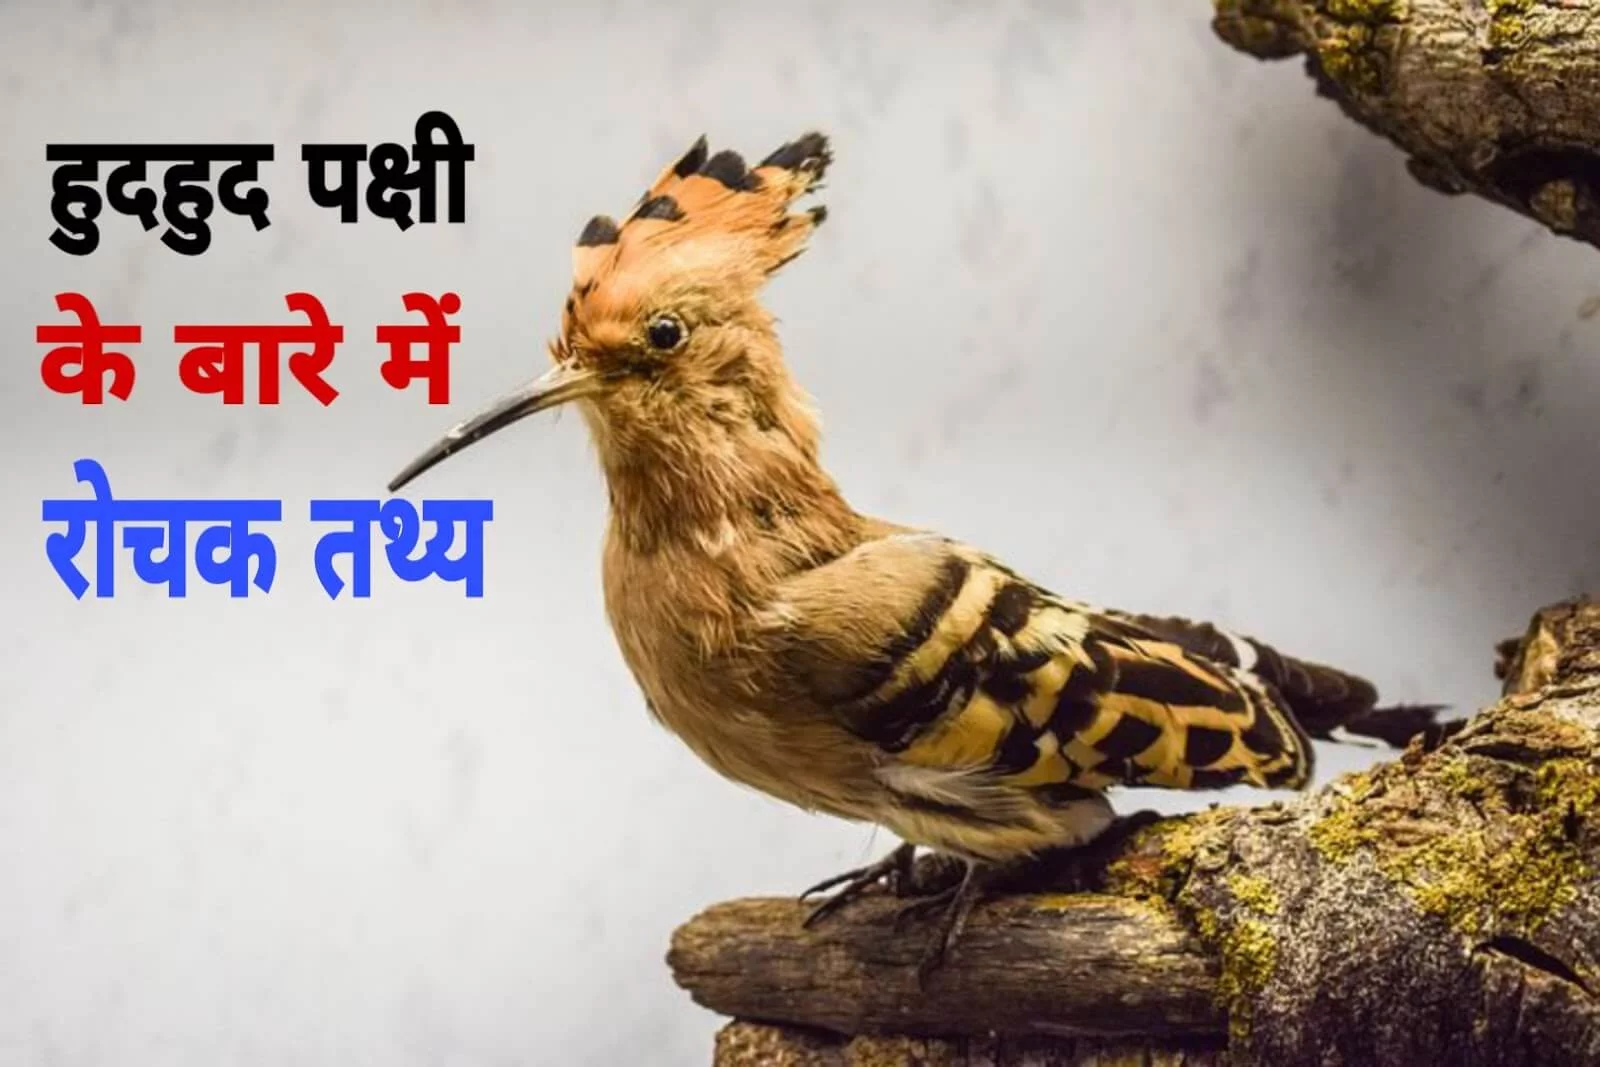 15 Interesting Facts about Hoopoe in Hindi | हुदहुद पक्षी के बारे में 15 रोचक तथ्य